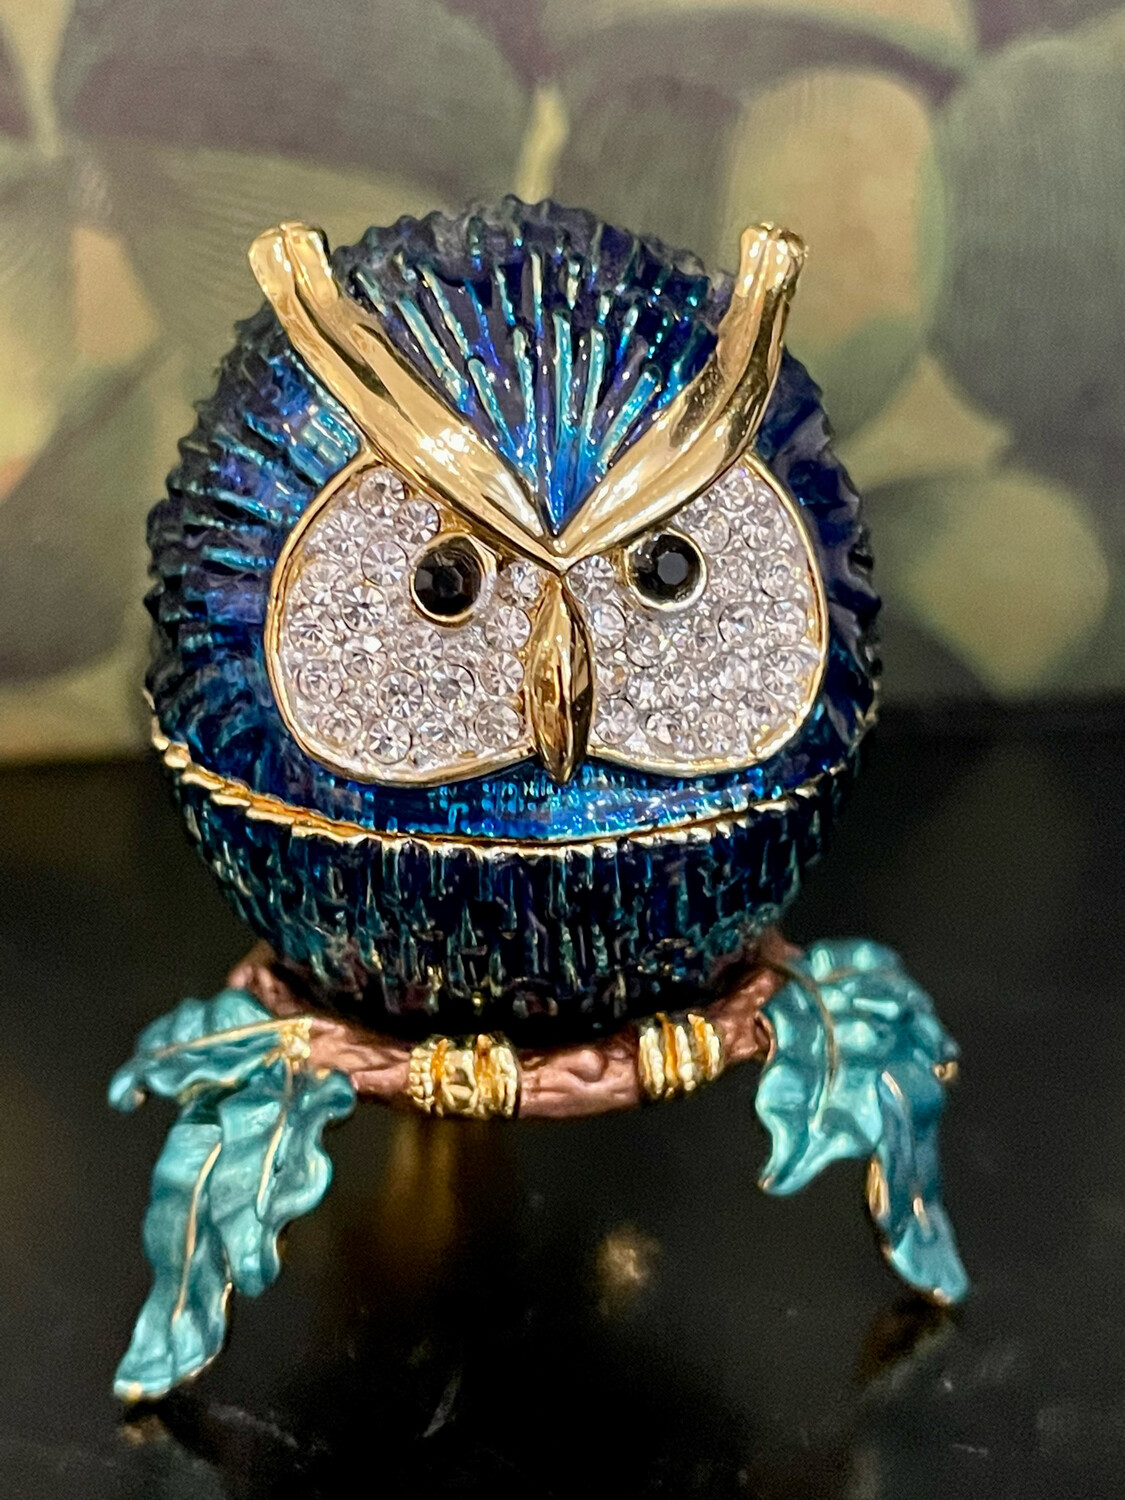 Enamel and Rhinstone Encrusted Owl Trinket Box